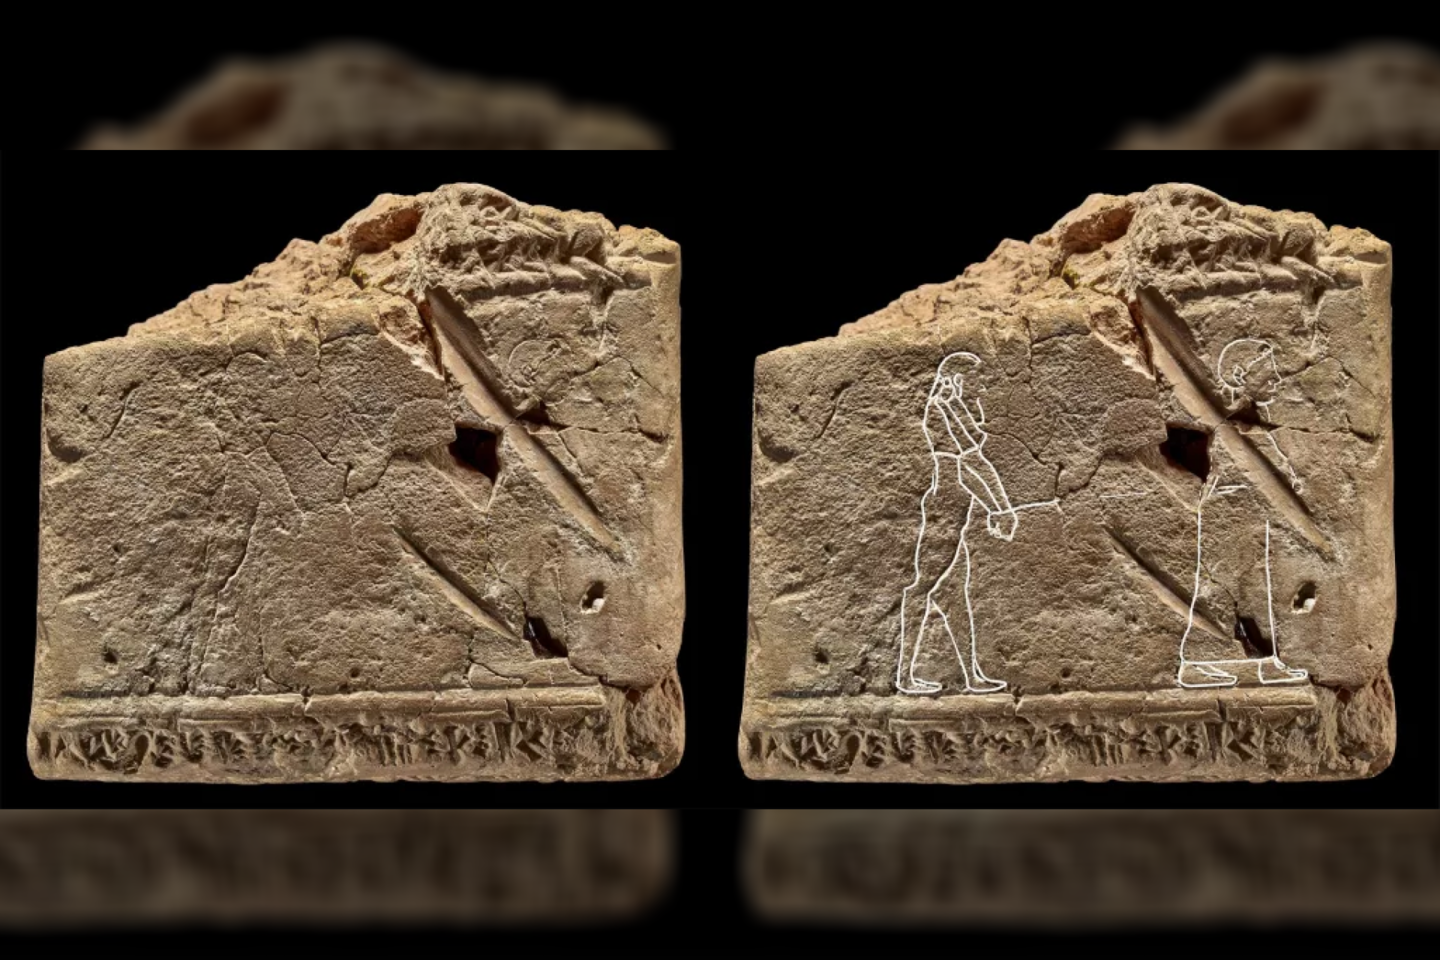  Muziejaus kuratorius ant 3500 metų senumo Babilono lentelės aptiko seniausią žinomą vaiduoklio piešinį.<br> Britų muziejaus nuotr.